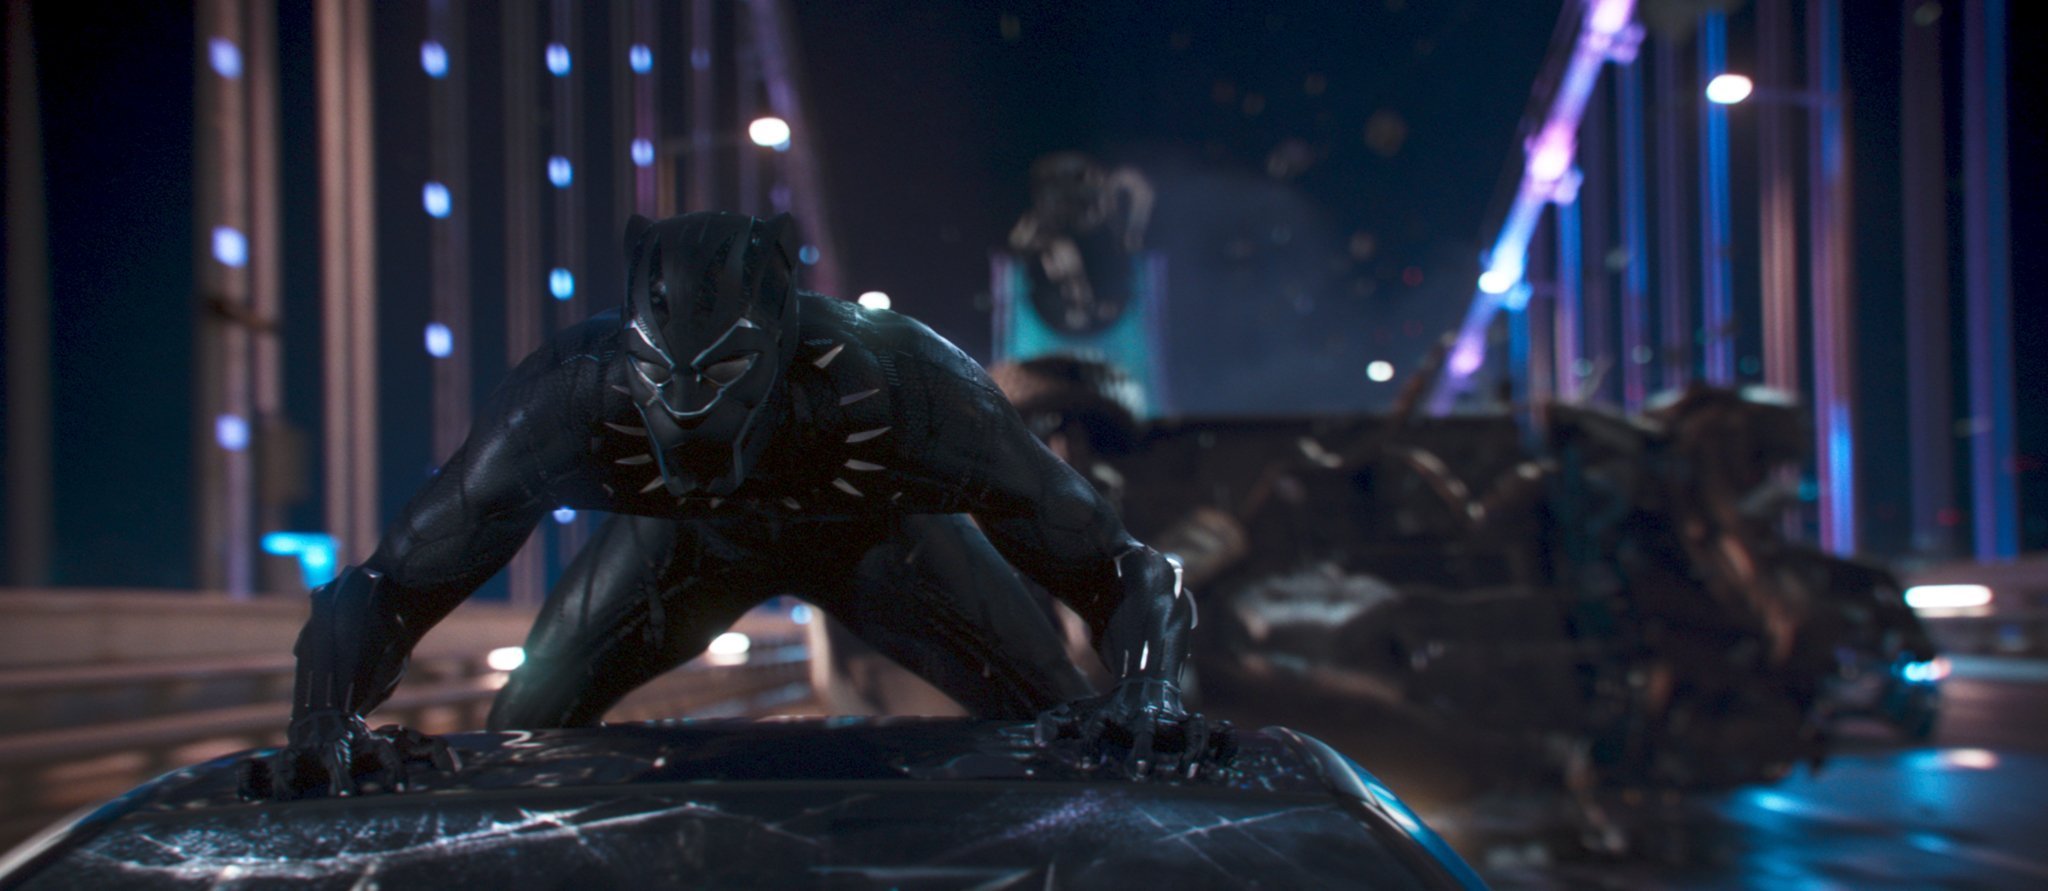 Photo du film Black Panther réalisé par Ryan Coogler avec Black Panther sur le toit d'une voiture